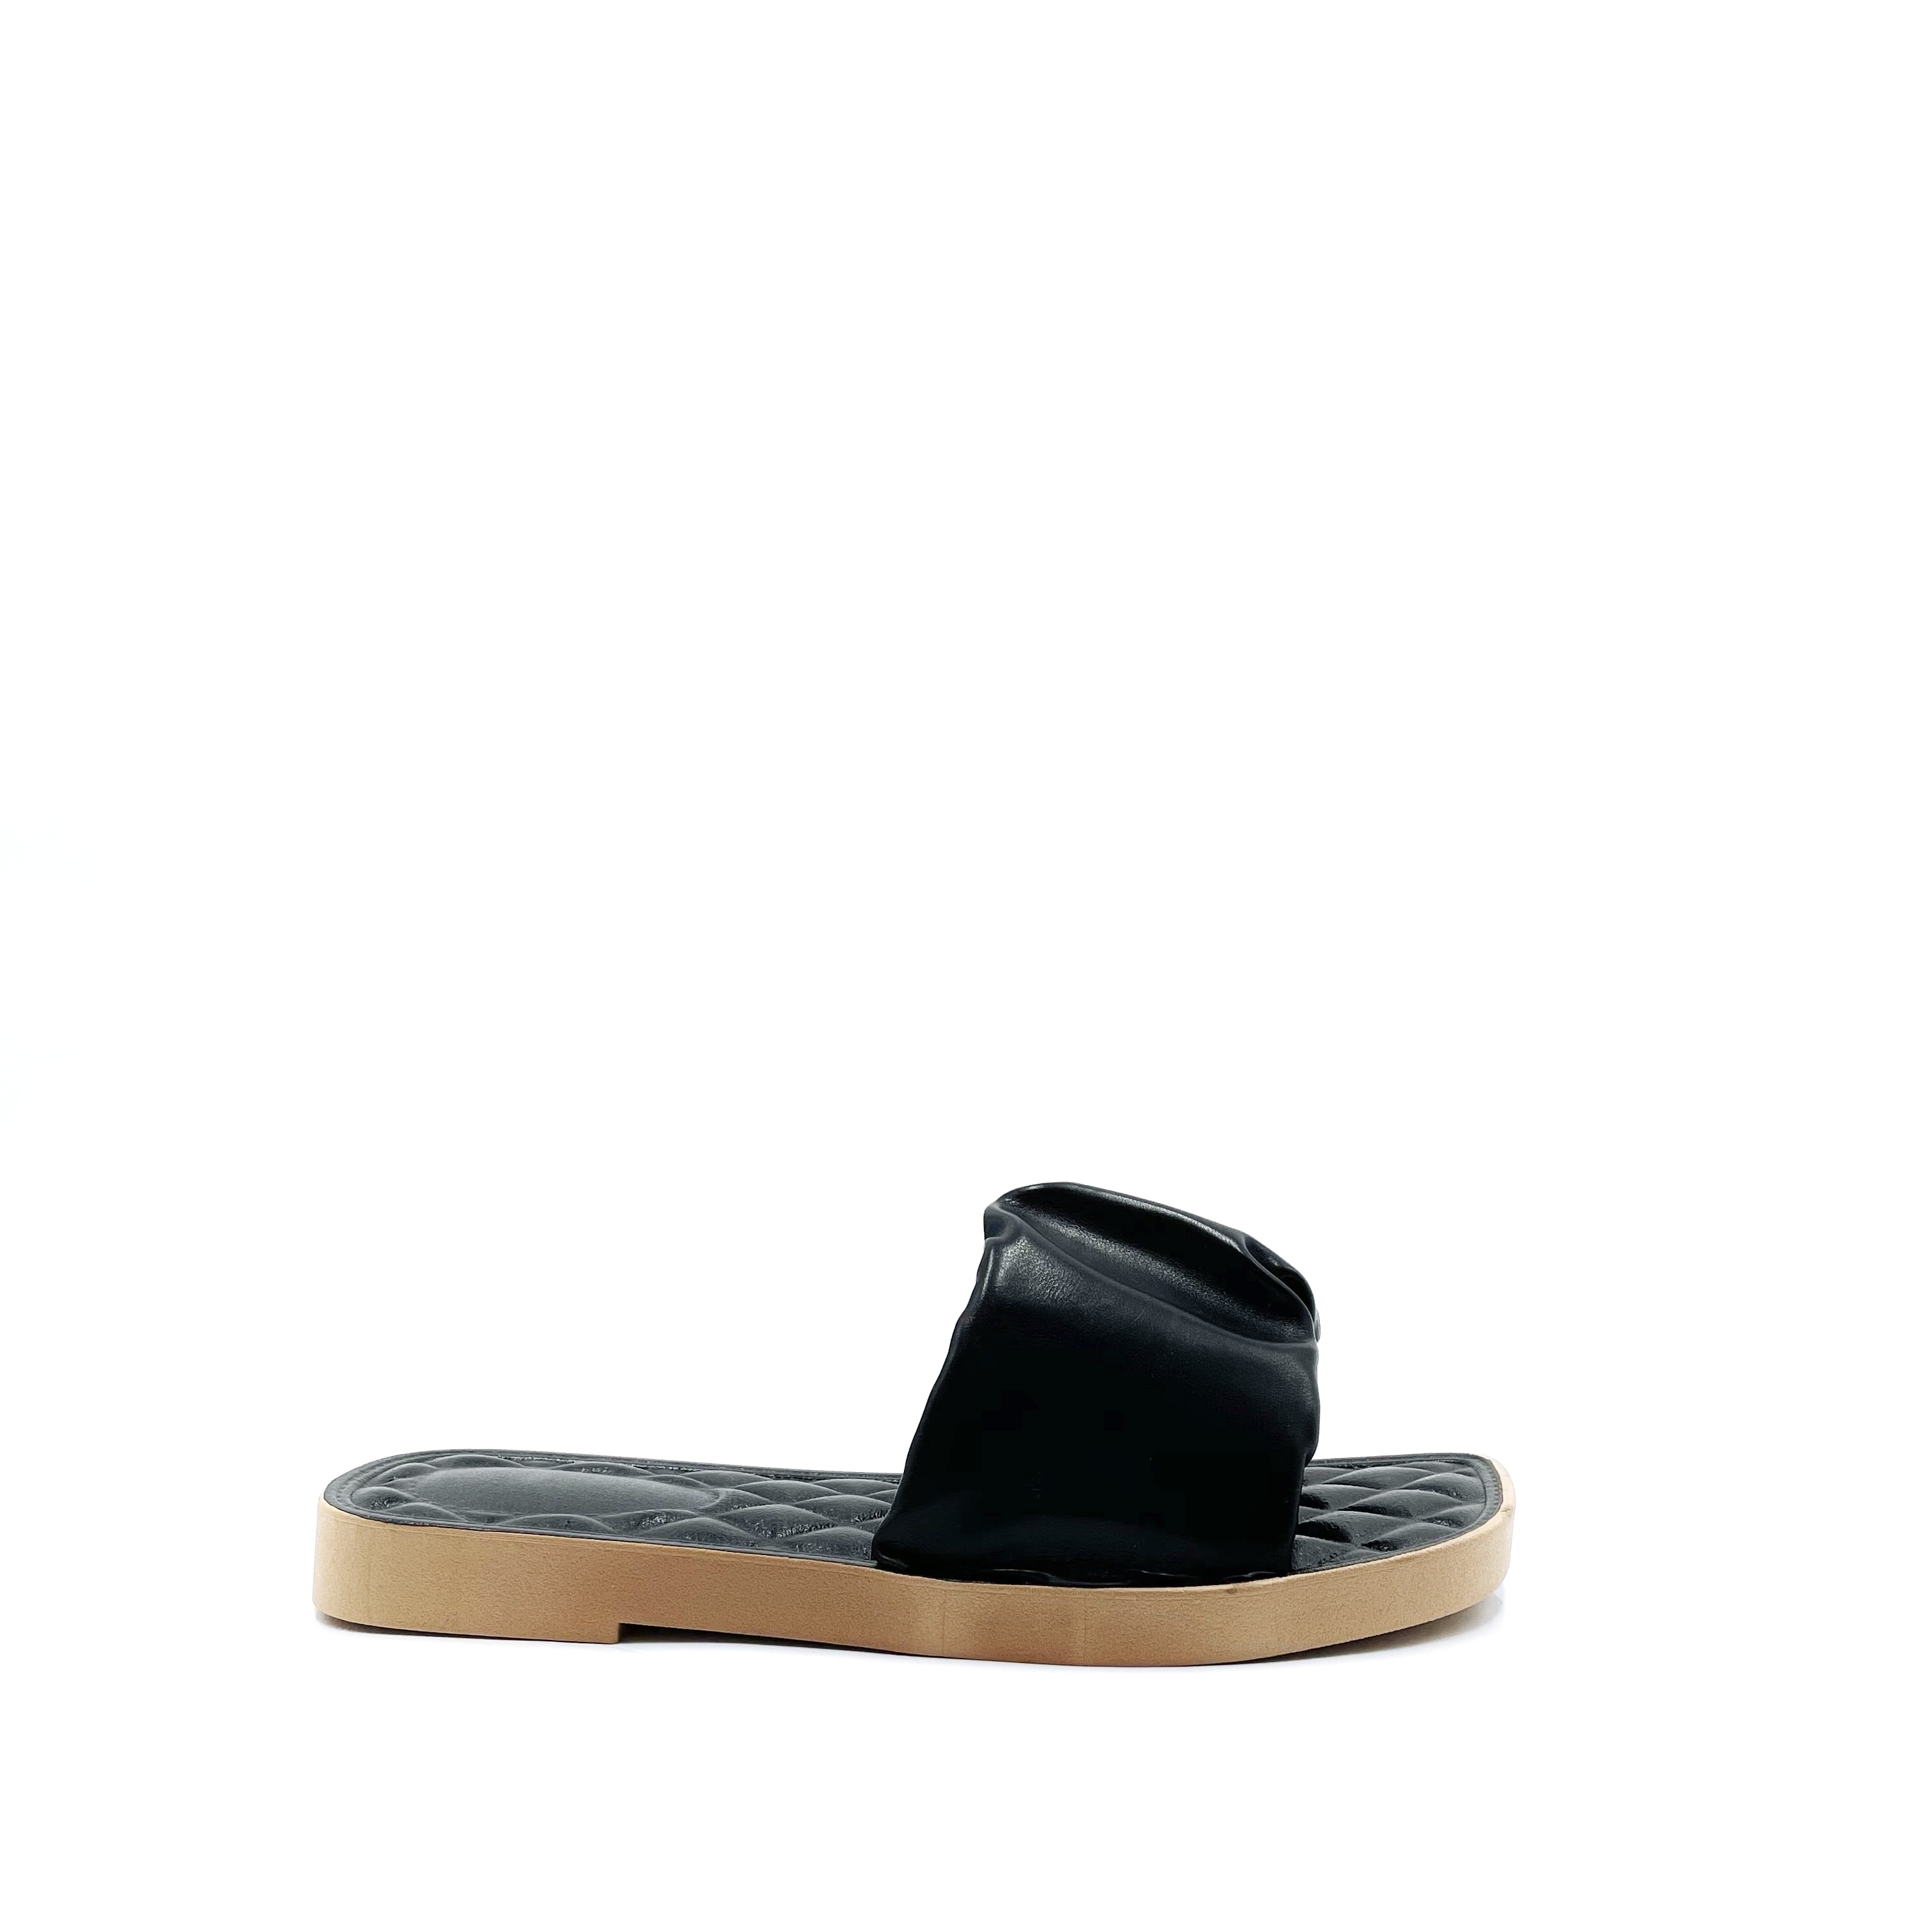 Sandals Shoes S175-NOIR BELLO STAR | eFashion Paris on eFashion.